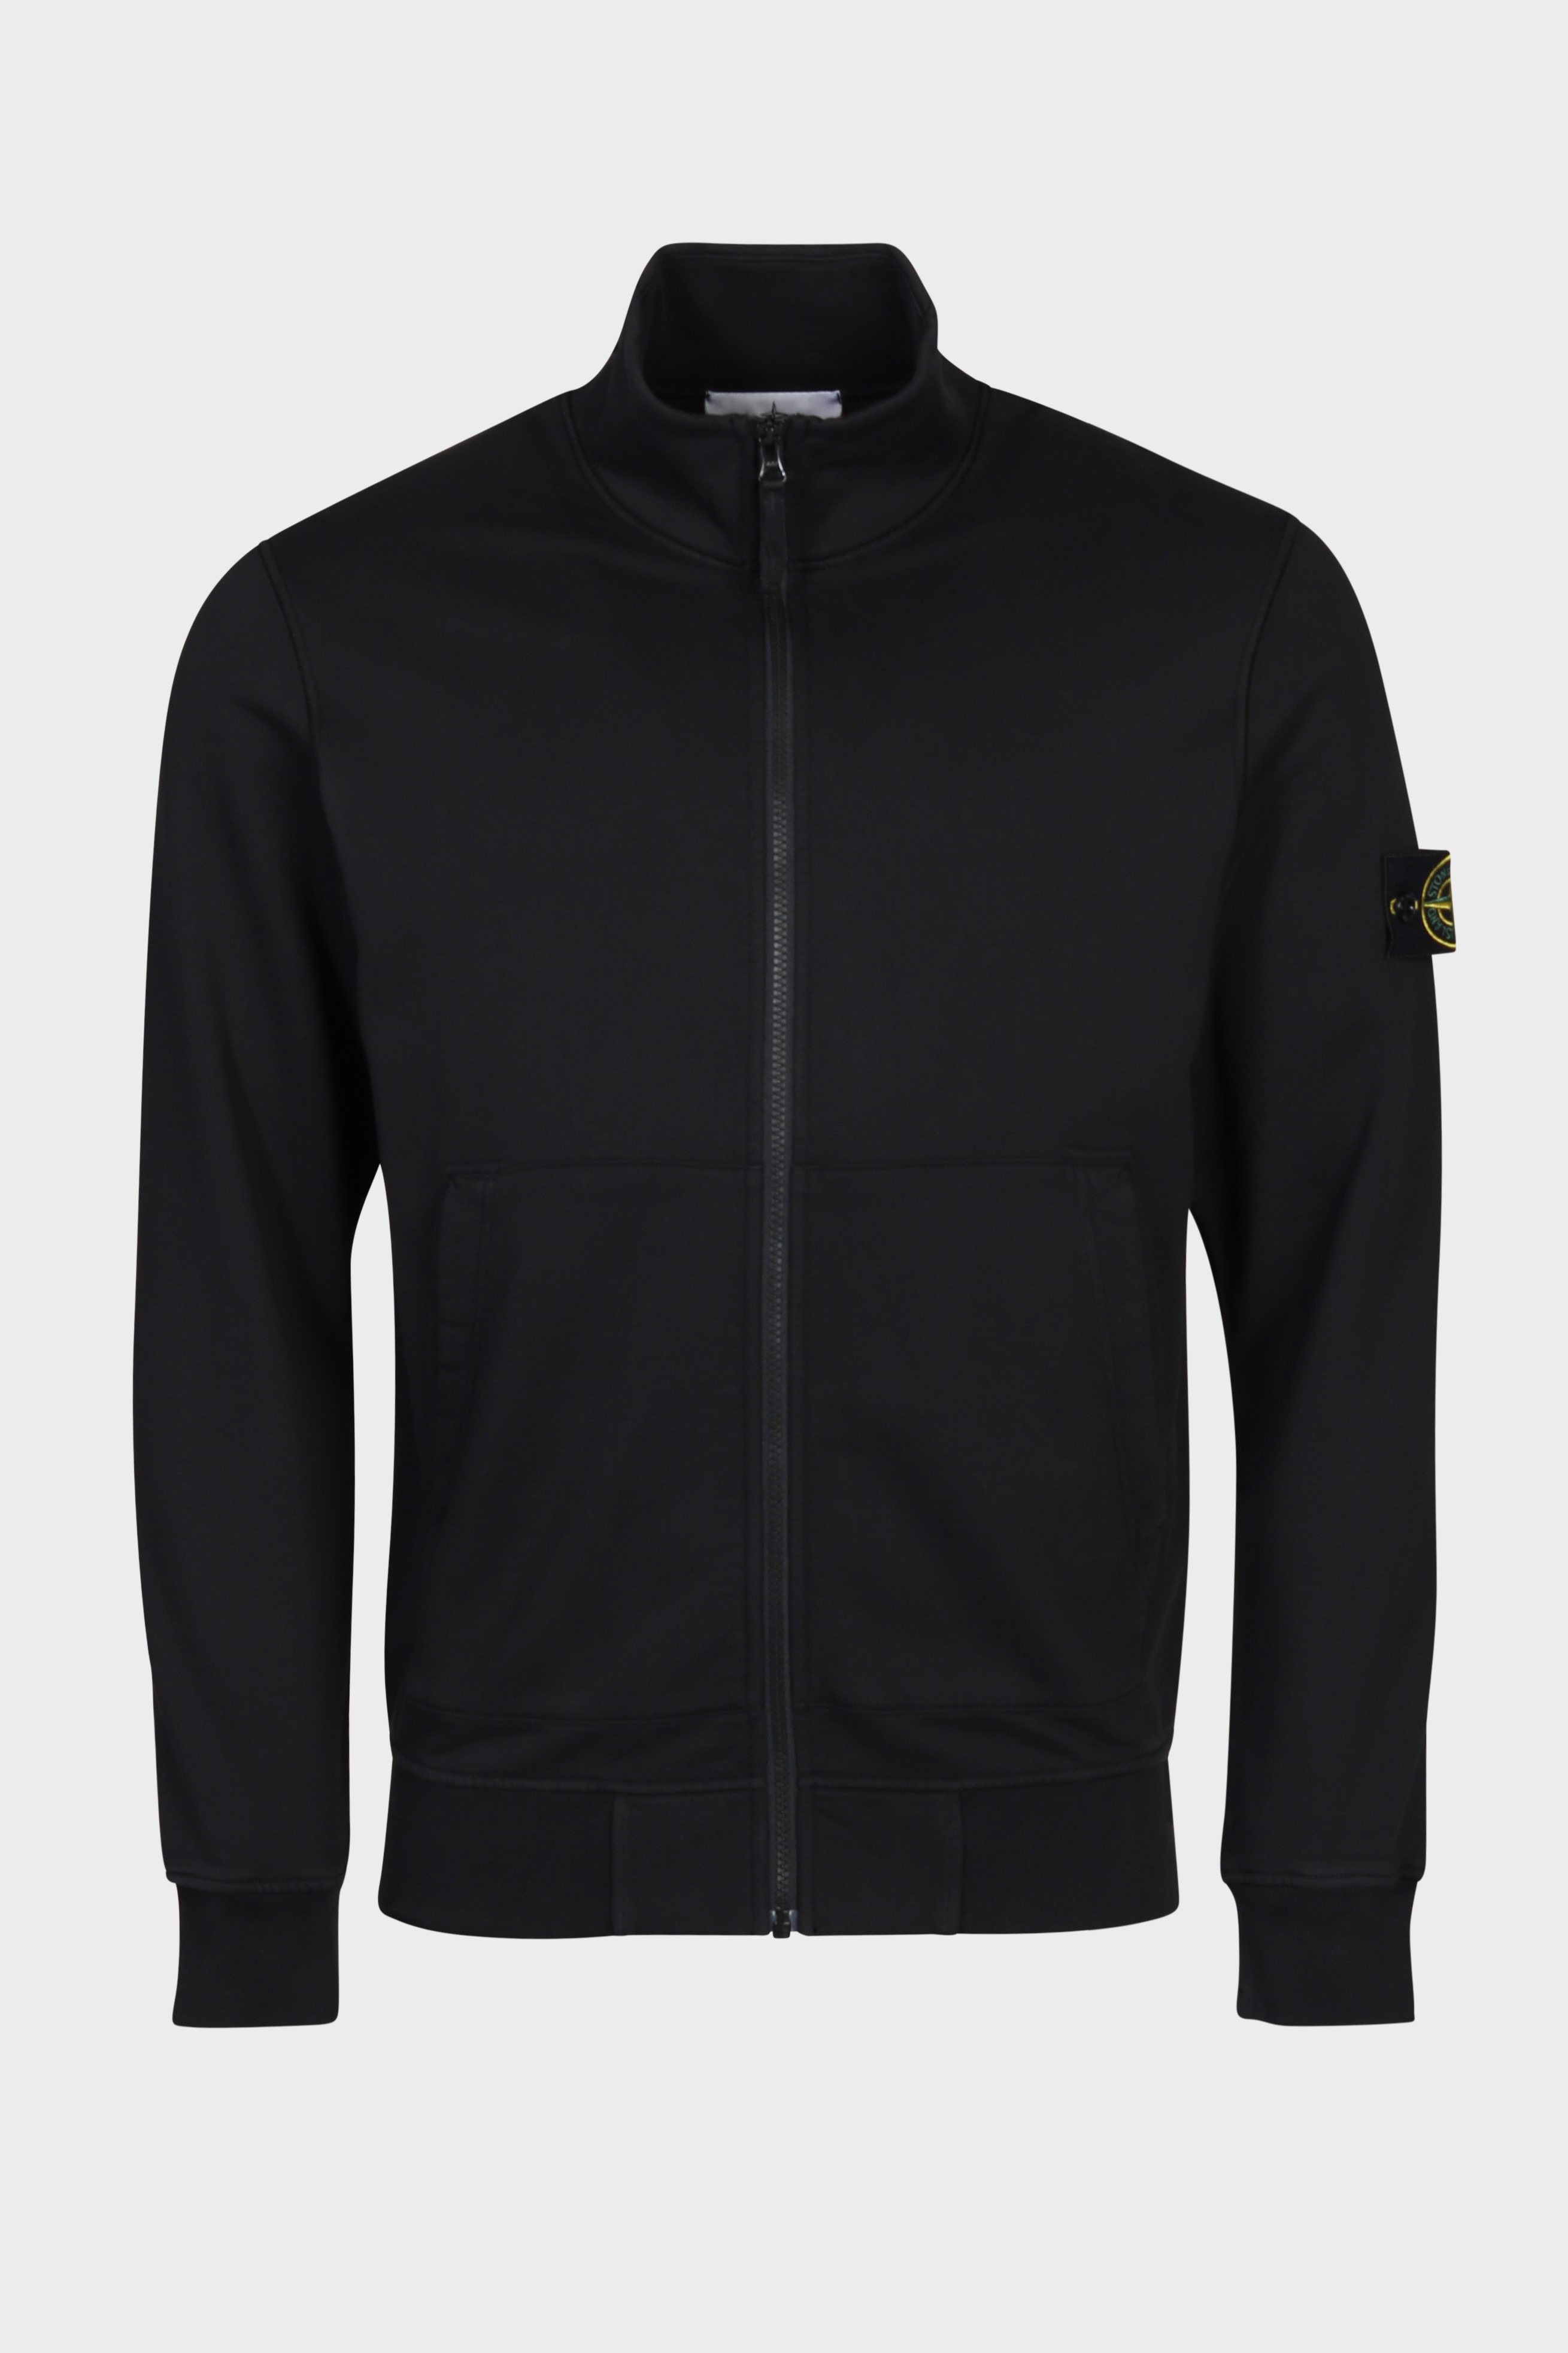 STONE ISLAND Zip Sweatshirt in Black S